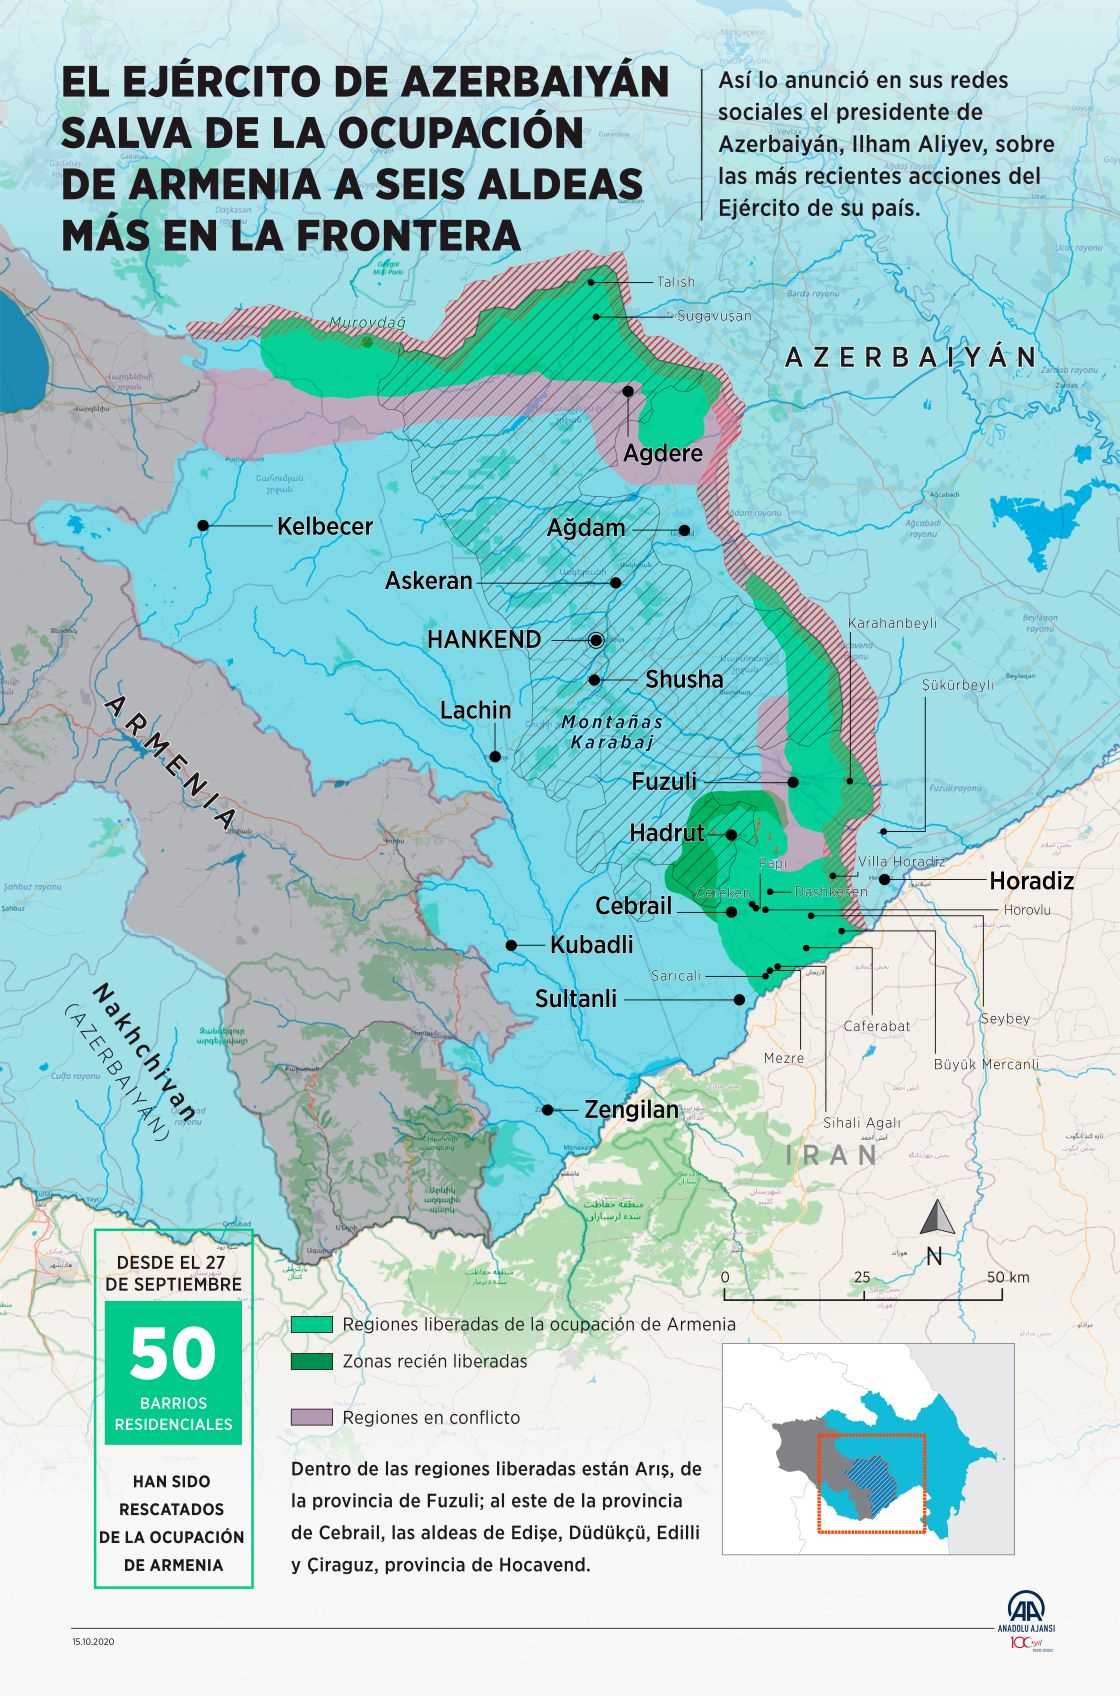 El ejército de Azerbaiyán salva de la ocupación de armenia a otras seis aldeas en la frontera